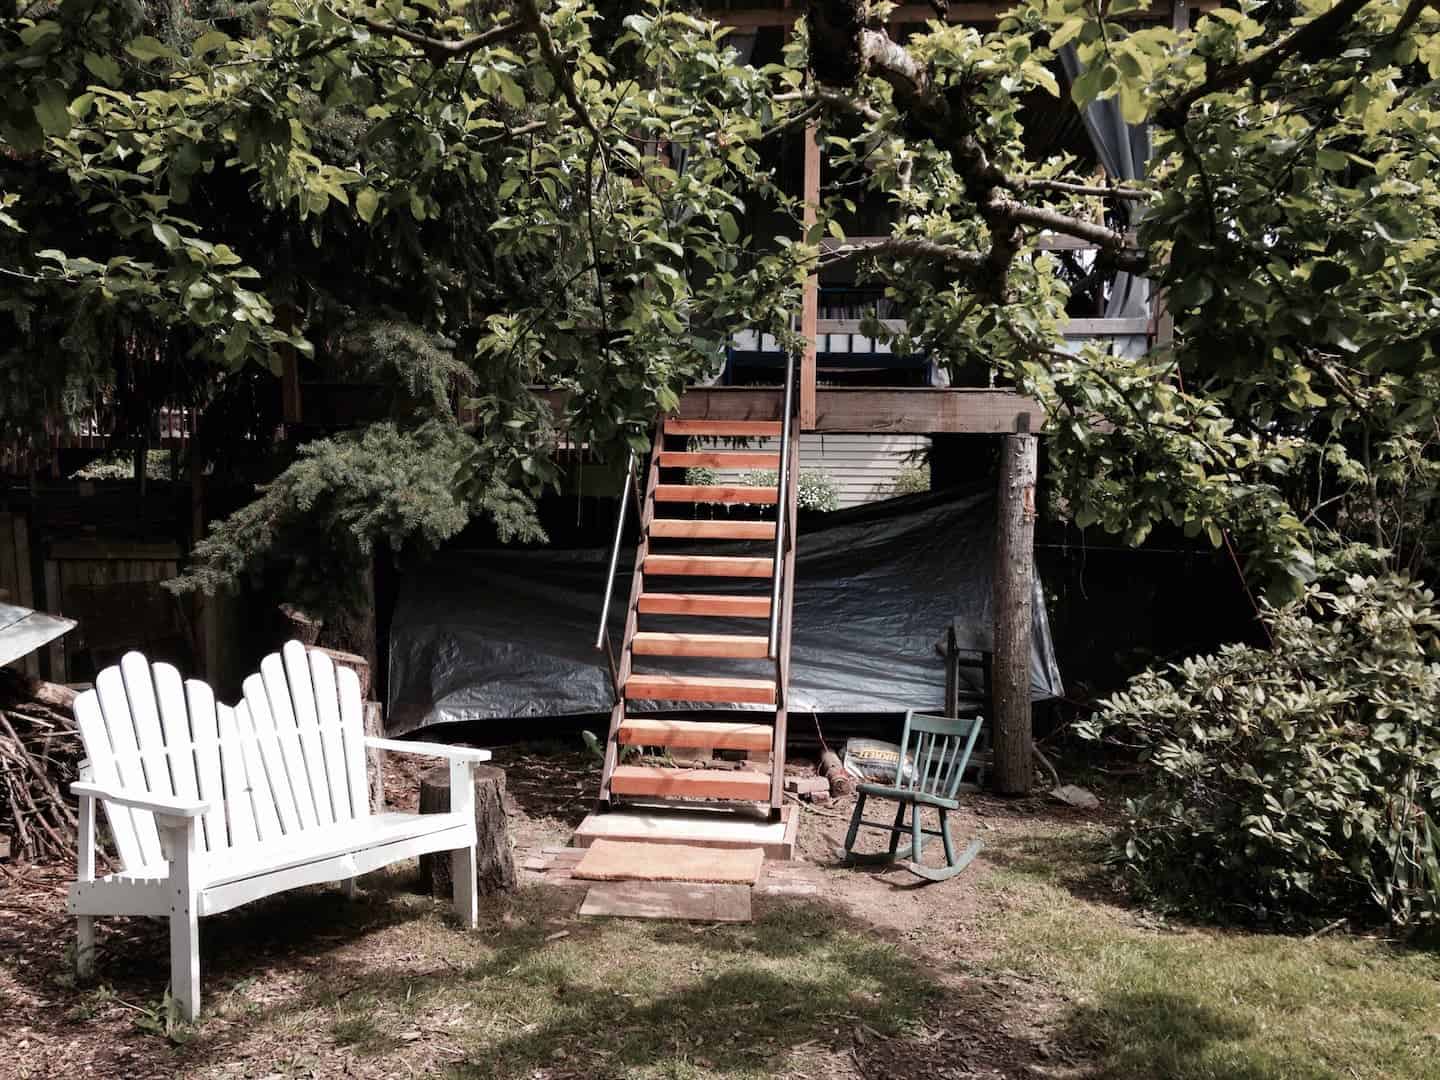 Image of treehouse rental in Washington